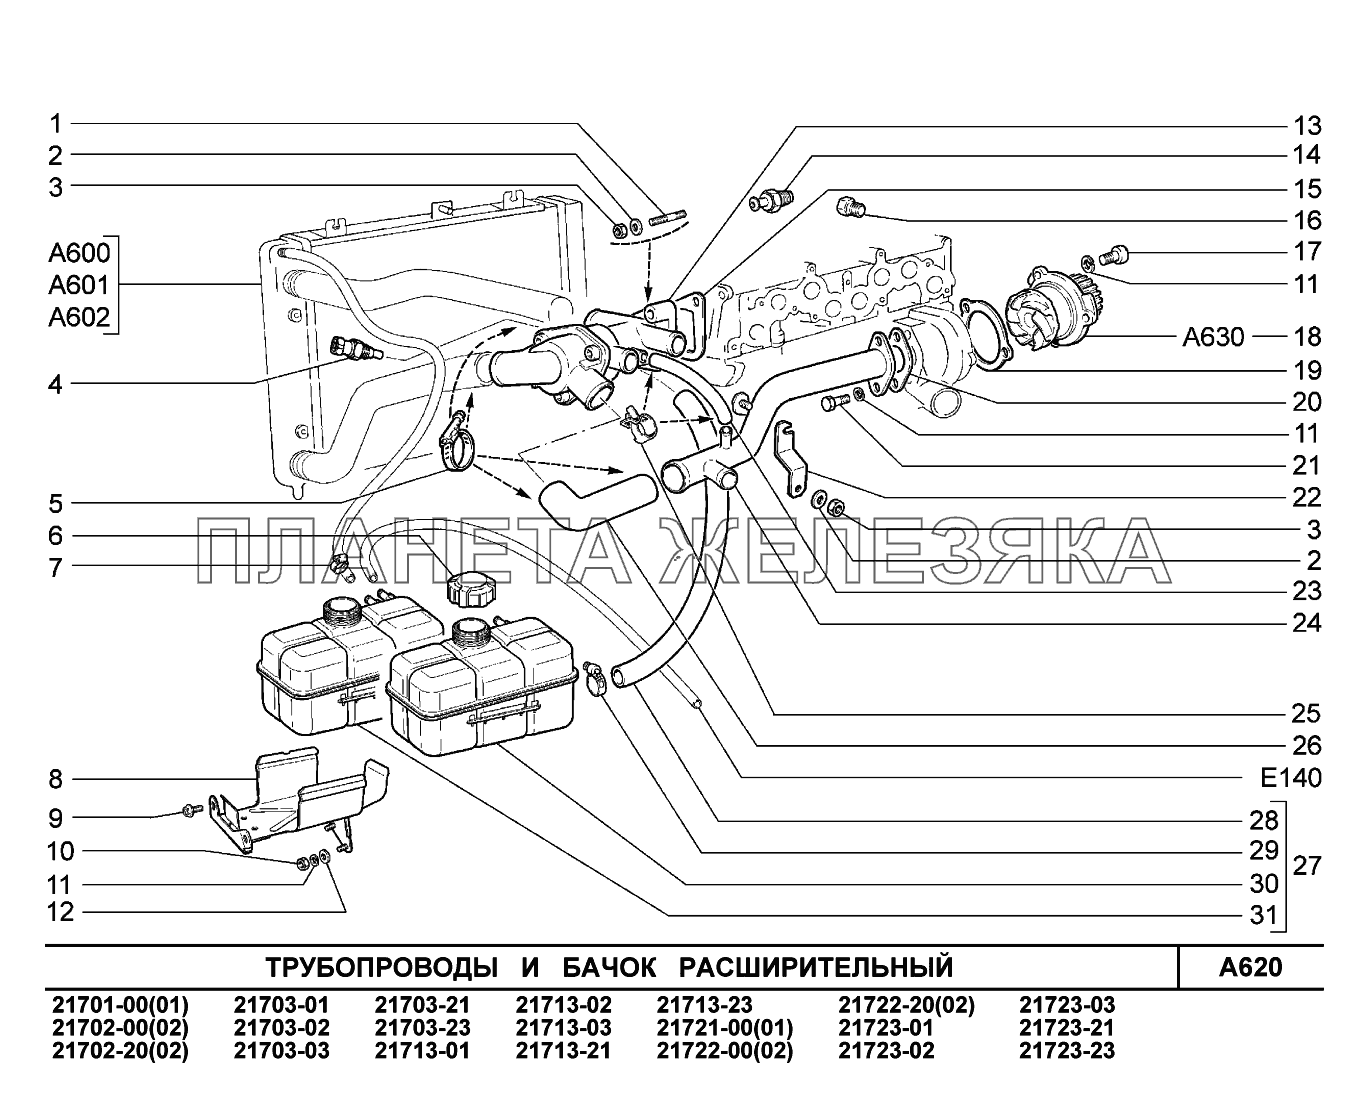 A620. Трубопроводы и бачок расширительный ВАЗ-2170 